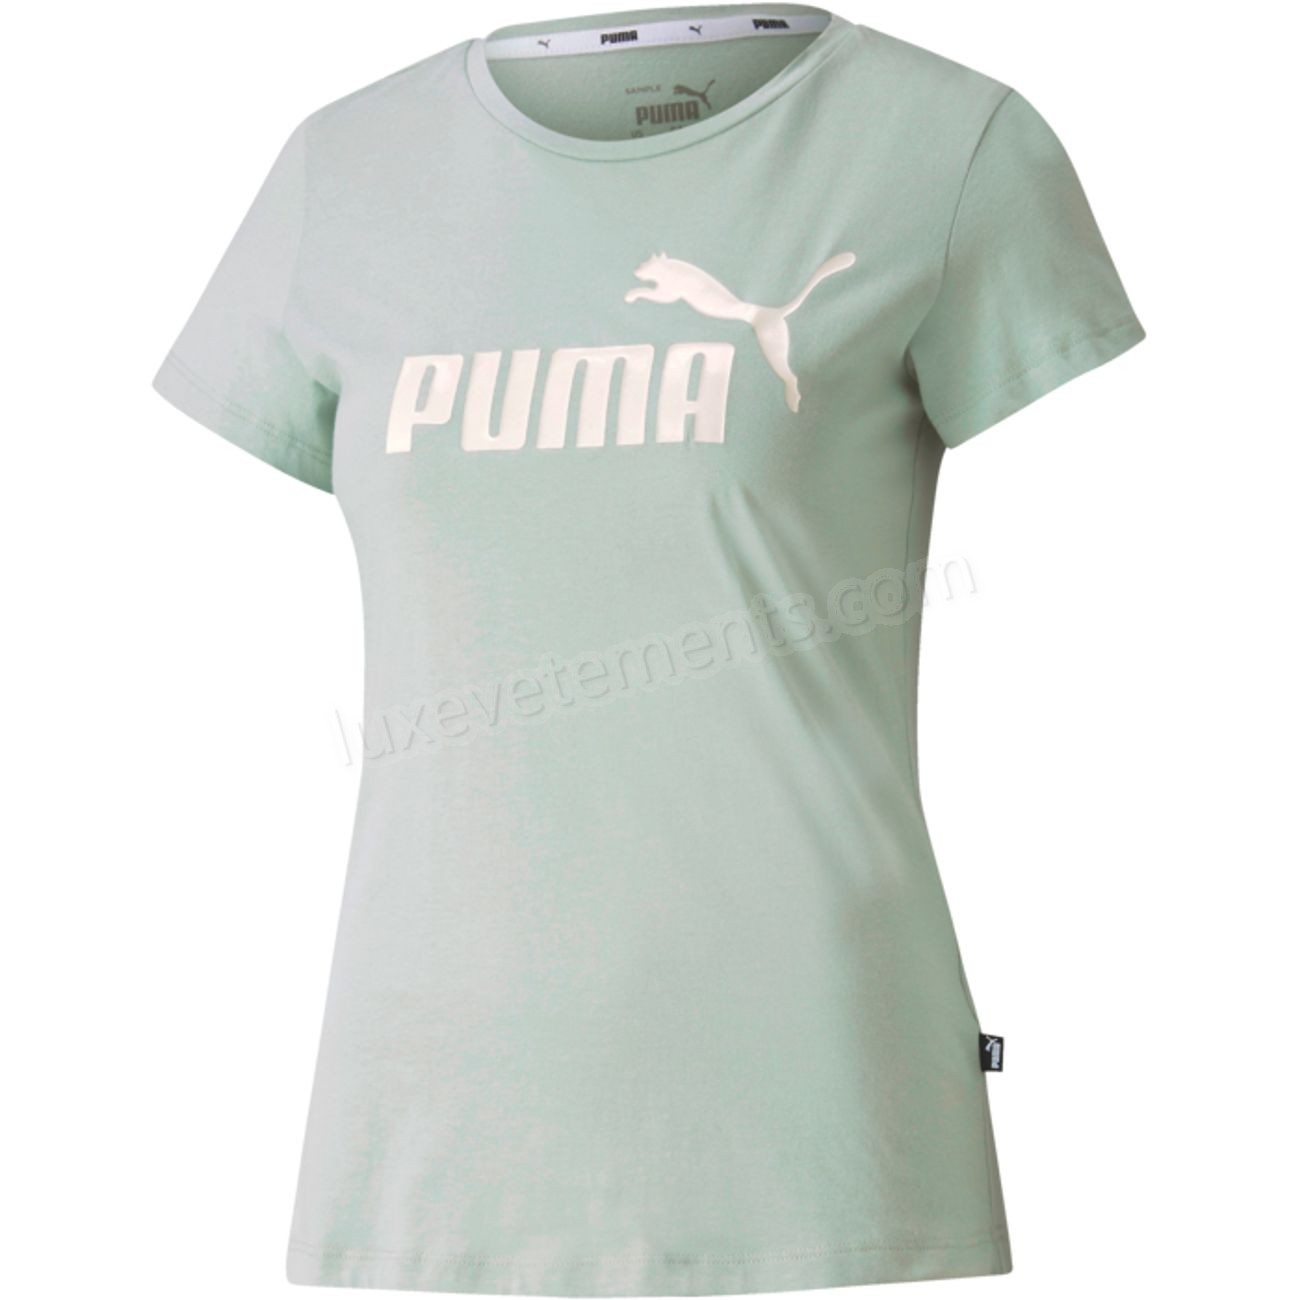 Puma-TEE SHIRT Multisport femme PUMA ESS + Vente en ligne - Puma-TEE SHIRT Multisport femme PUMA ESS + Vente en ligne